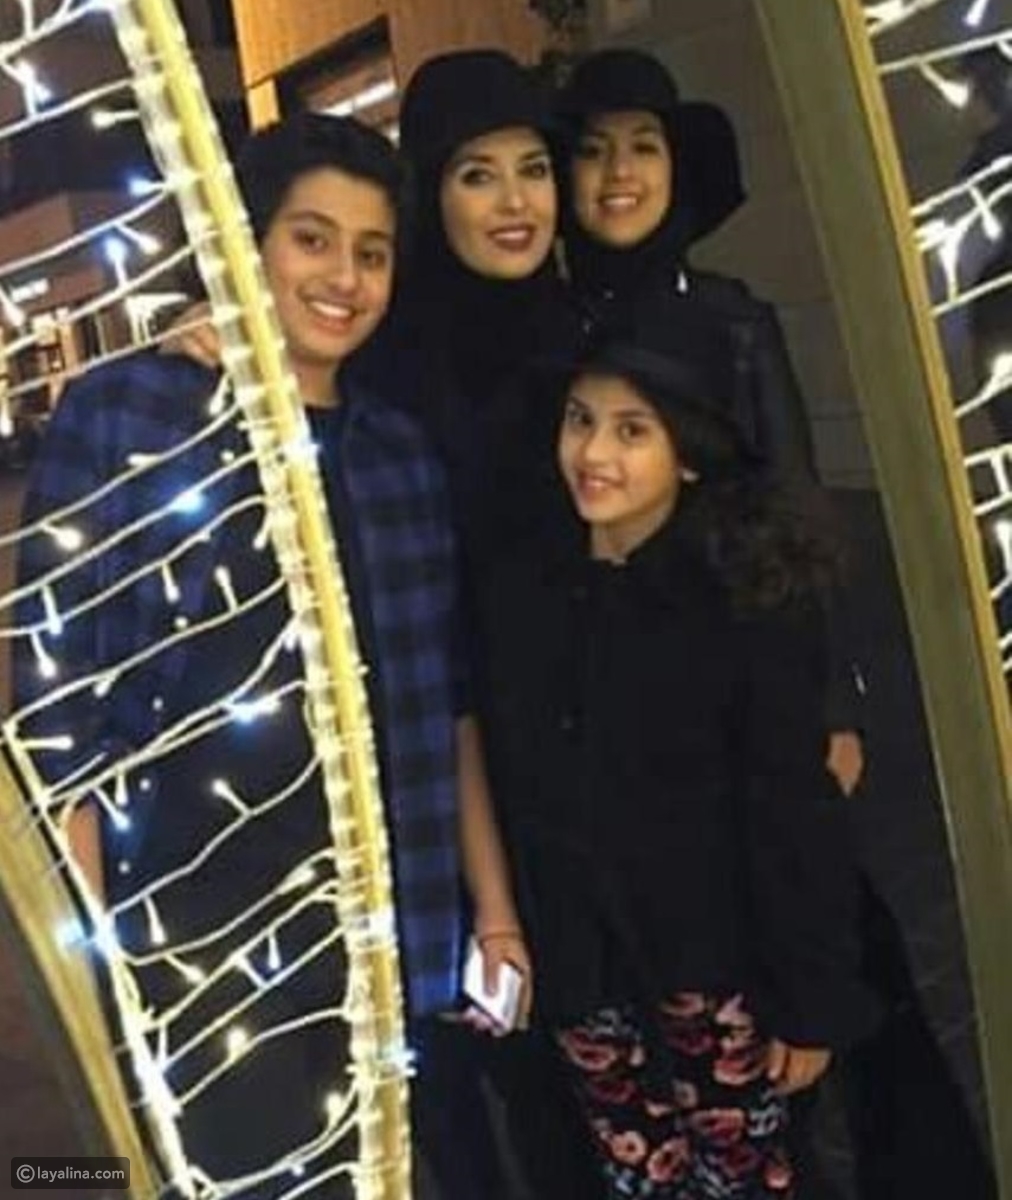 تم تداول صورة حديثة للفنانة المعتزلة جيهان نصر مع أطفالها